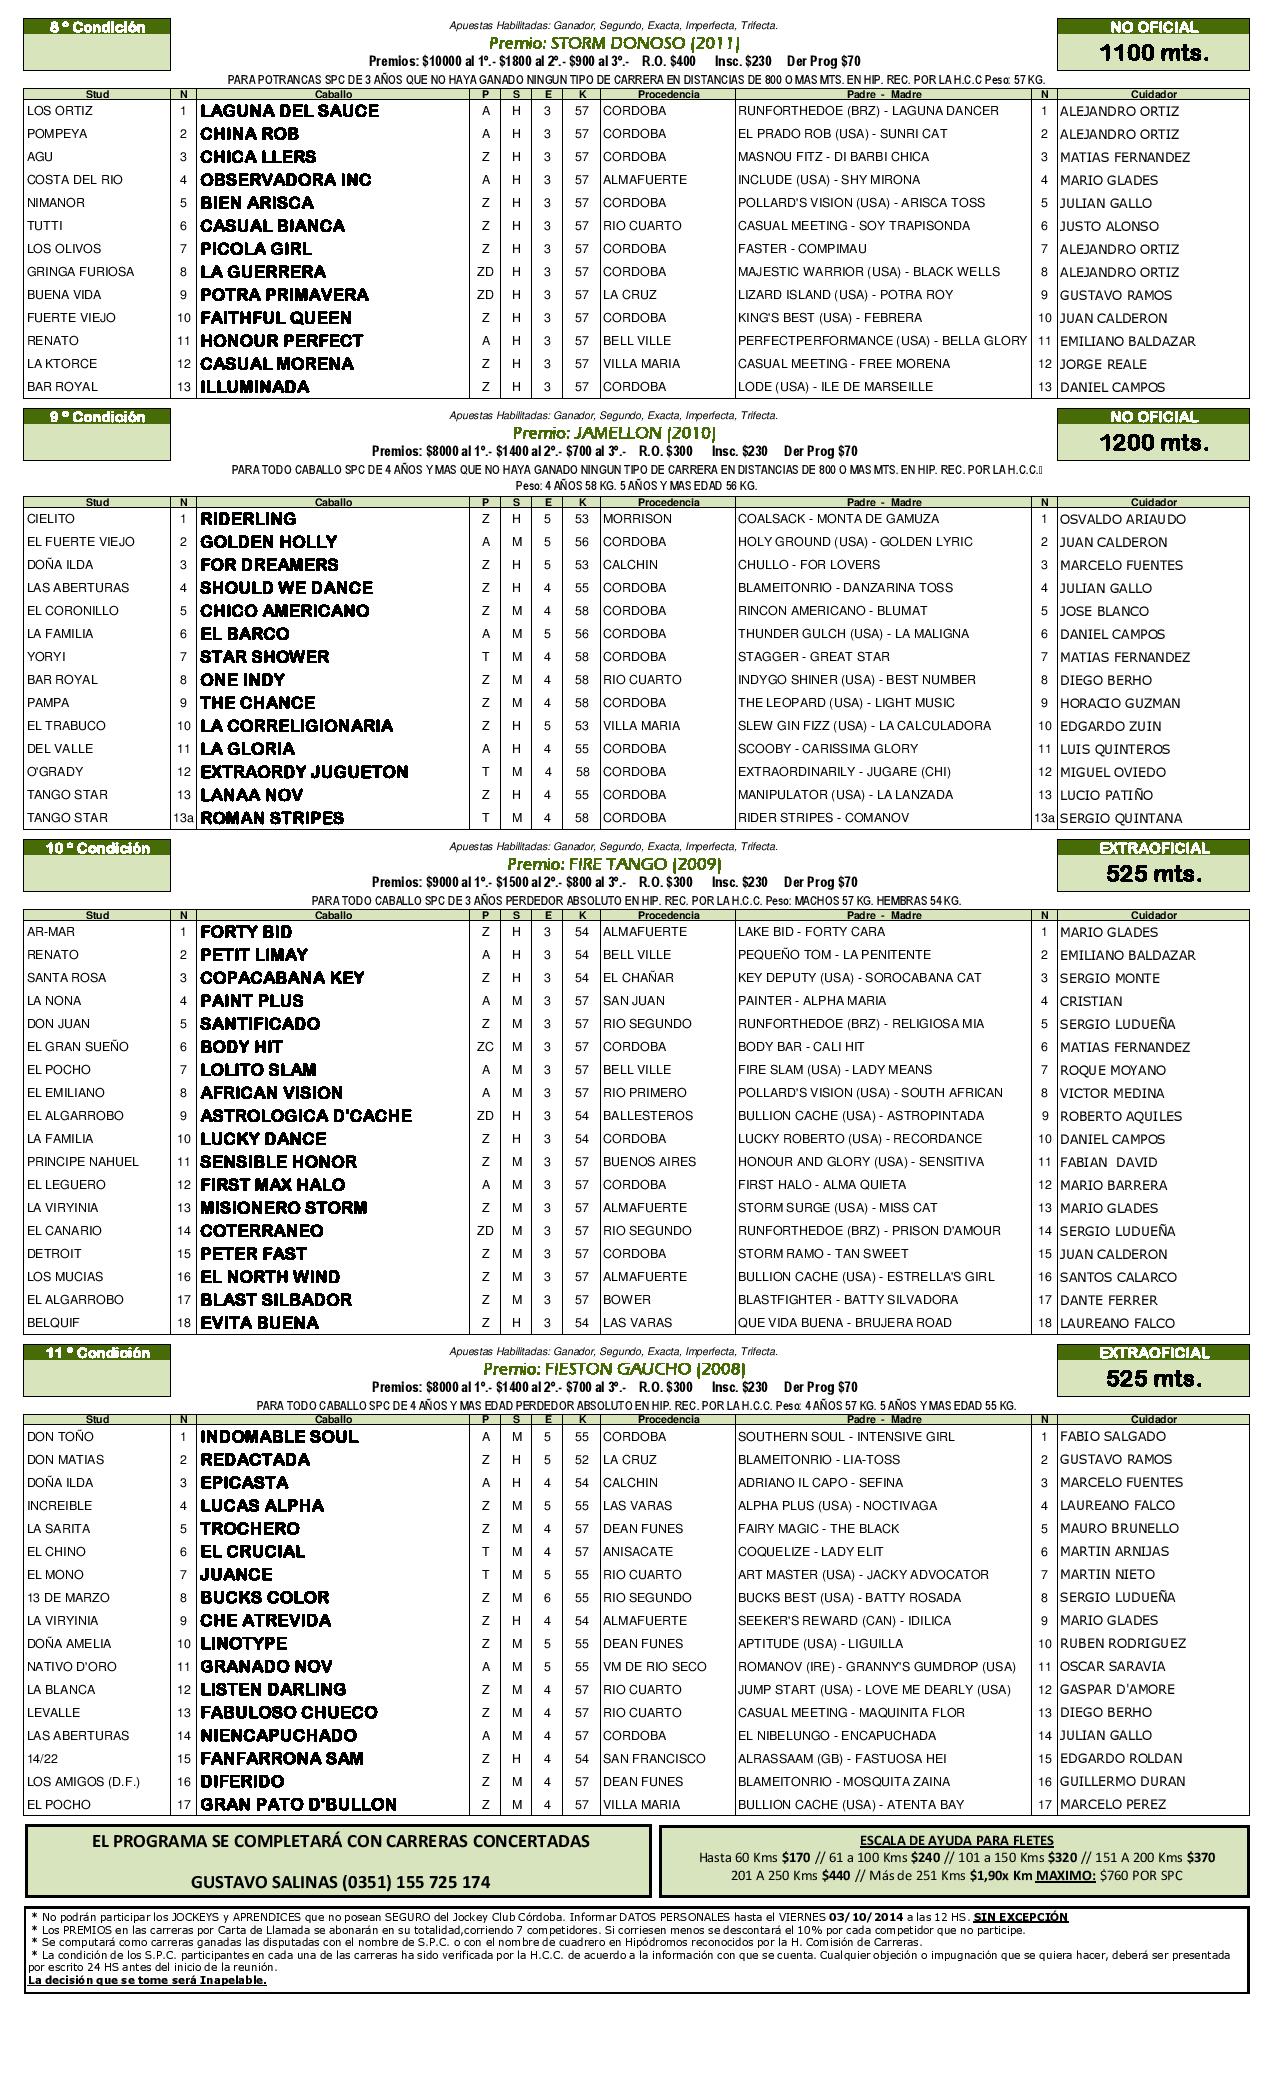 SJ2014 - Ratificados-page-002